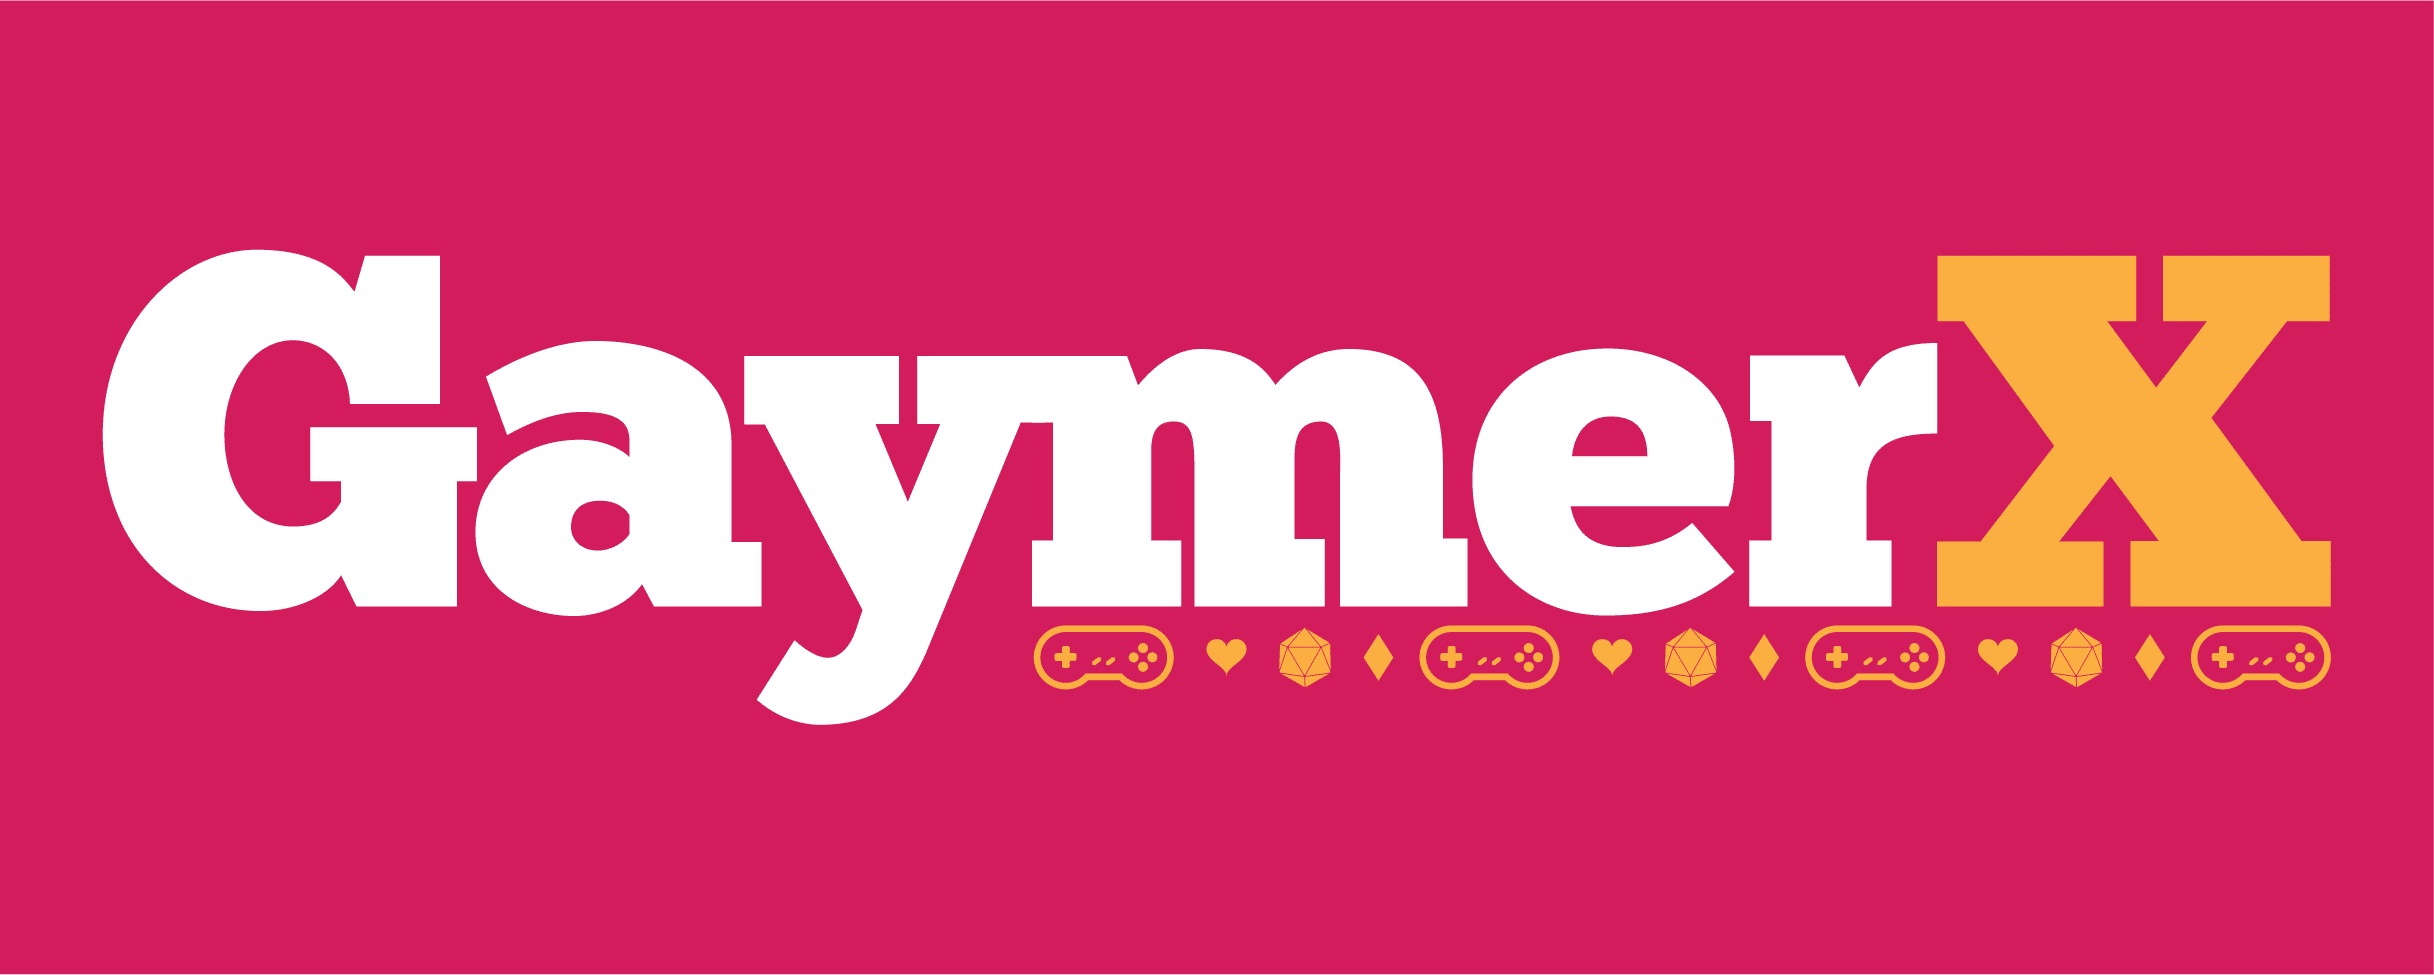 GaymerX Logo © Gaymerx